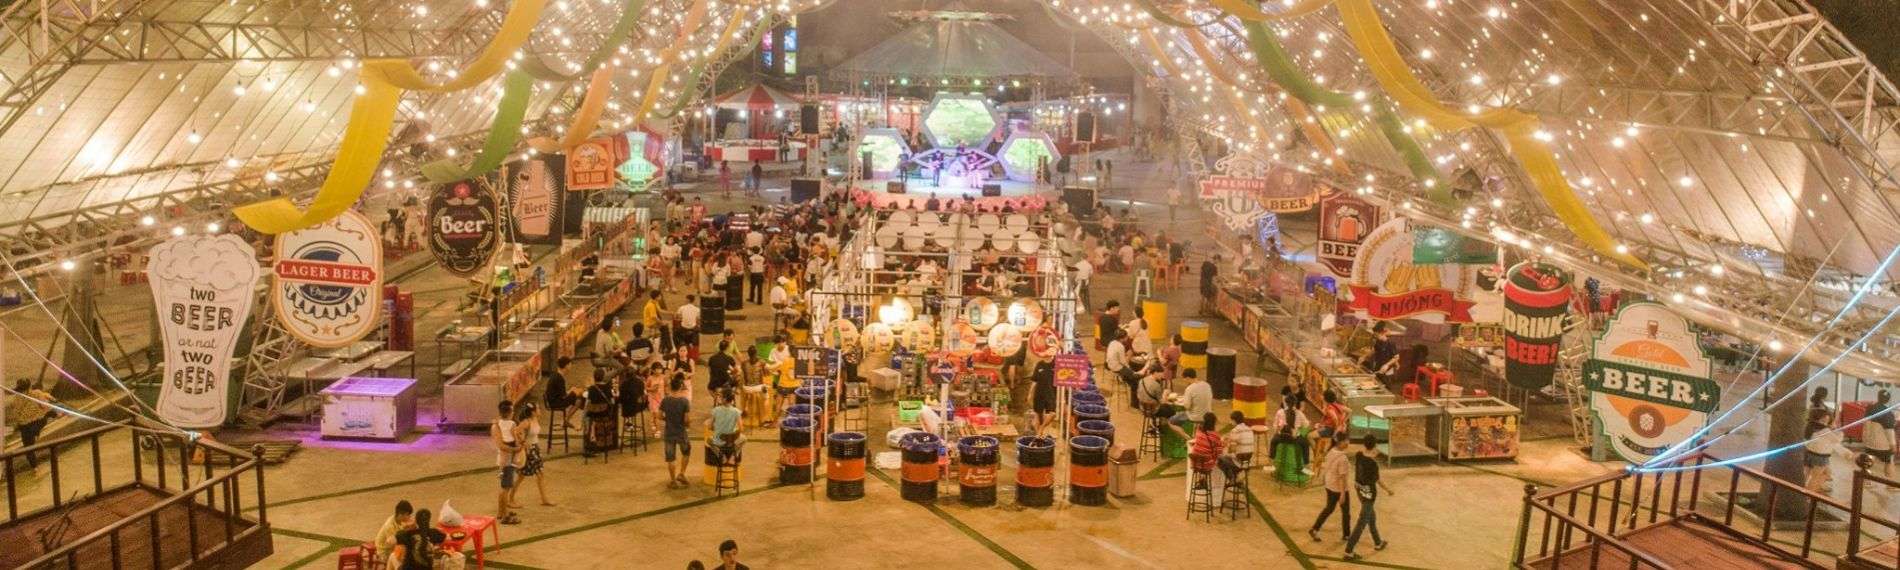 Các món hải sản nổi tiếng nào có thể tìm thấy tại chợ đêm hải sản Đà Nẵng?
